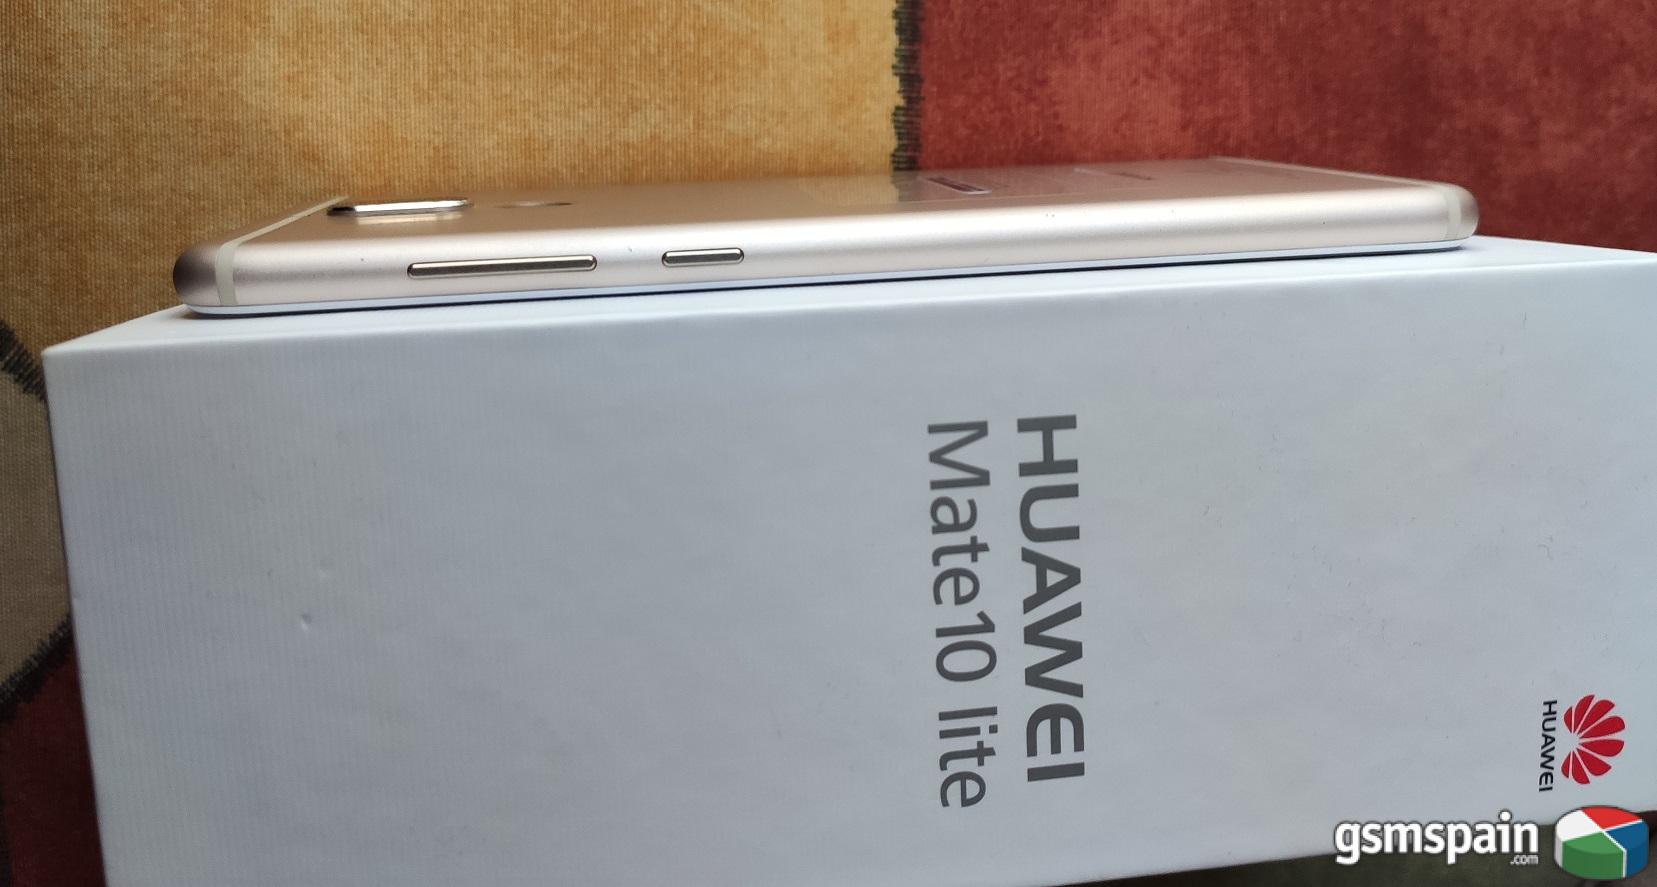 [VENDO] Huawei mate 10 lite 4/64